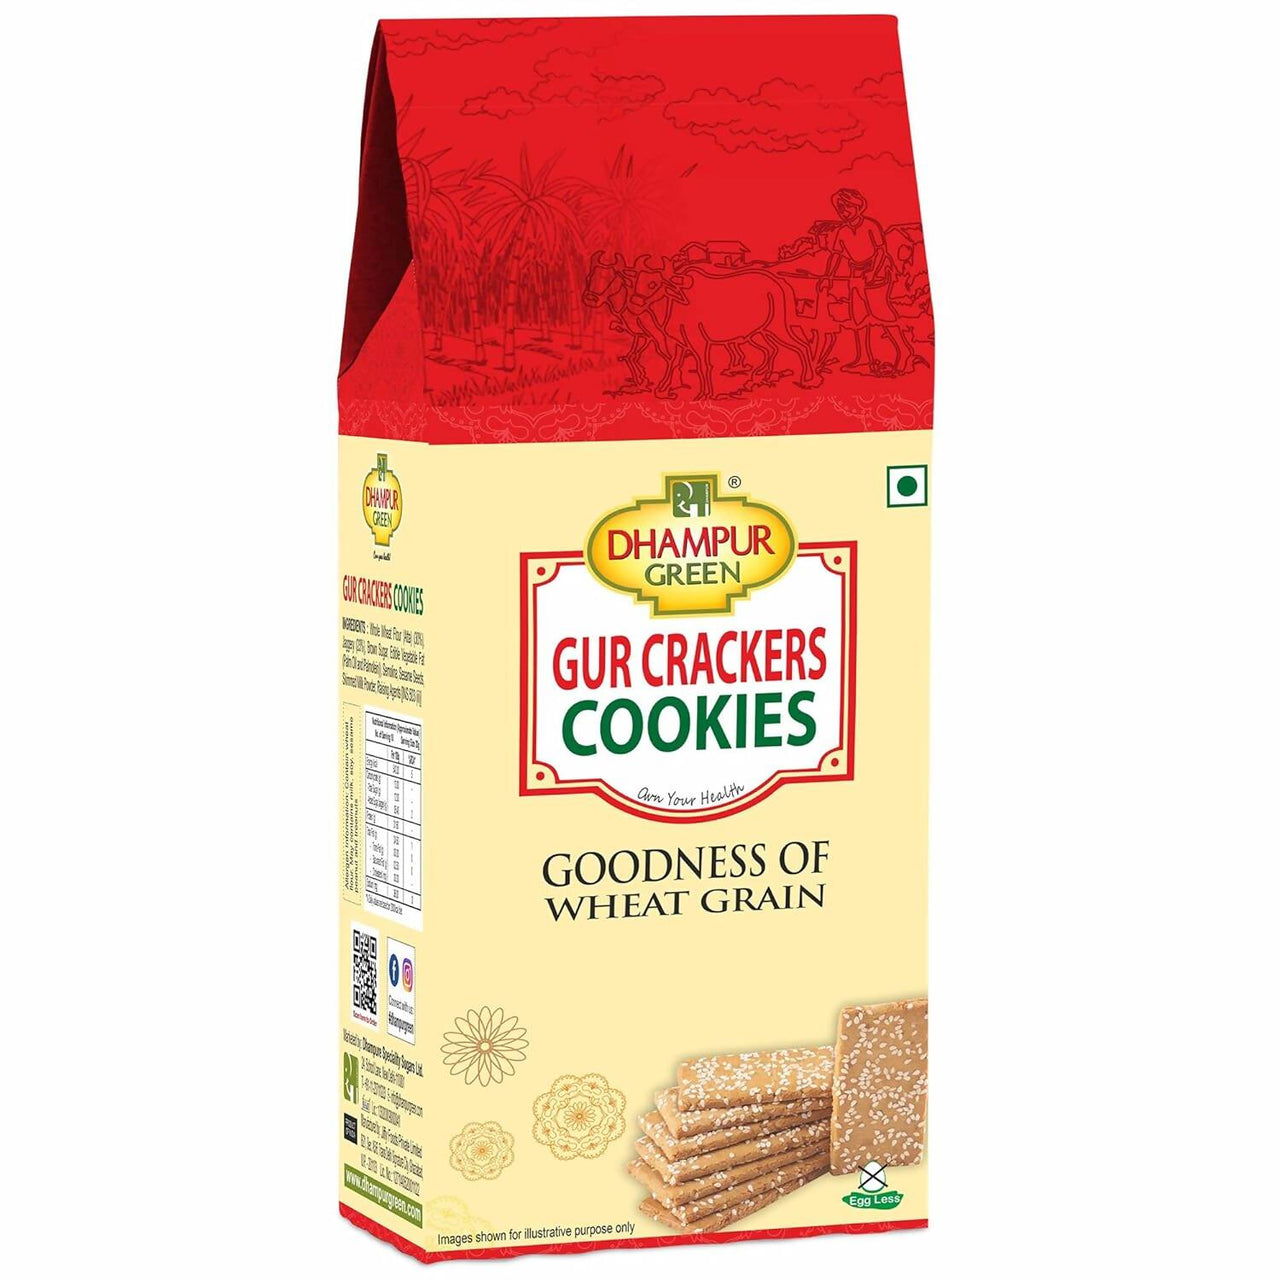 Dhampur Green Gur Crackers Cookies - Distacart